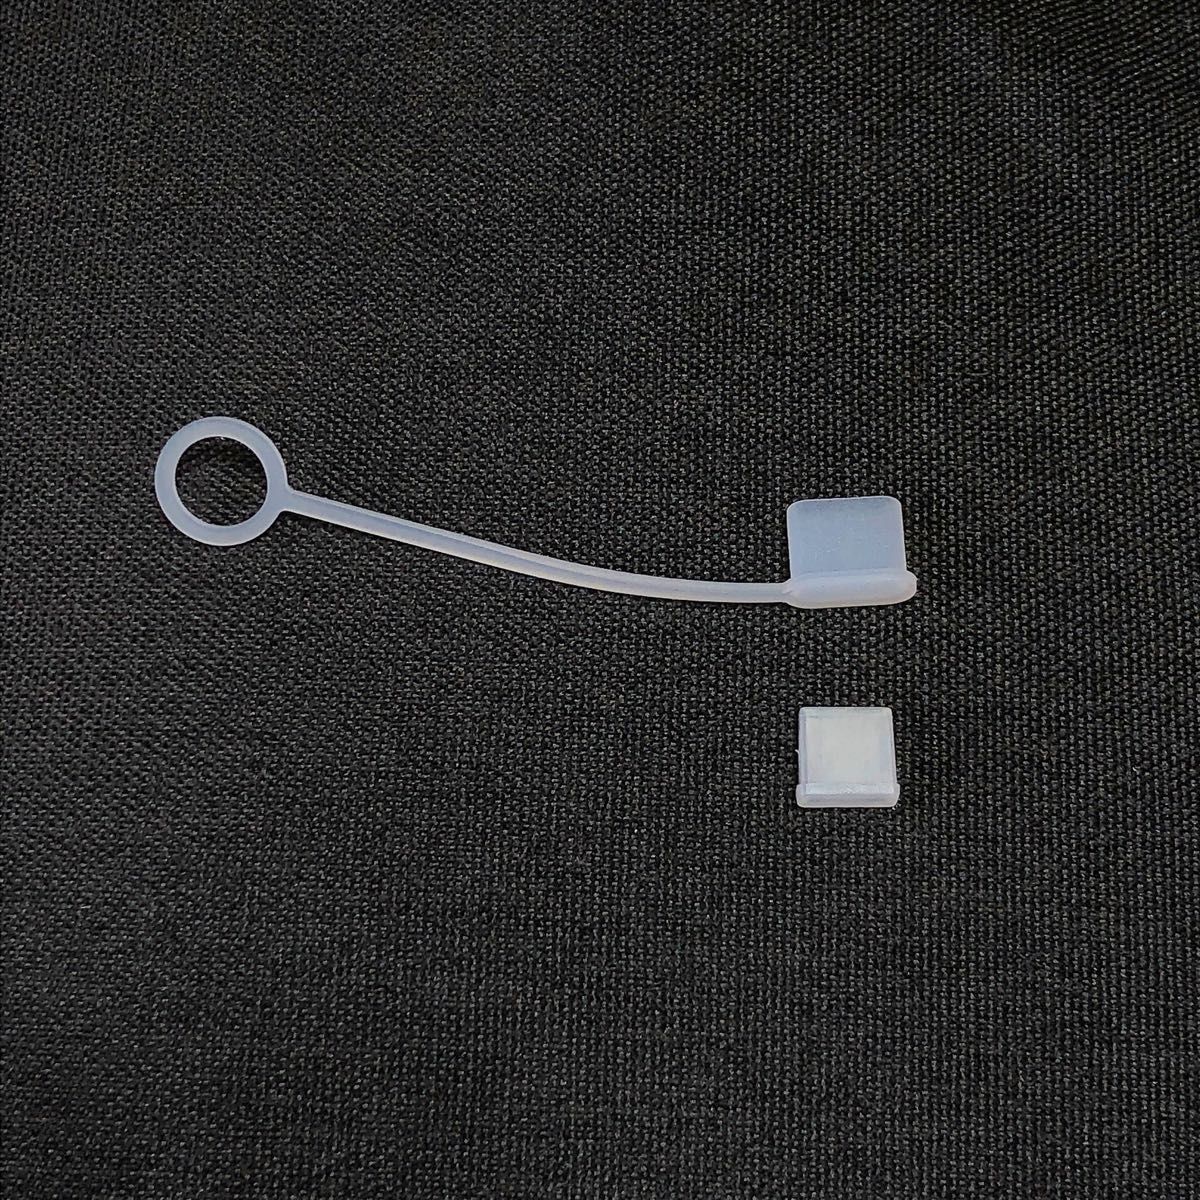 シリコン キャップ カバー ライトニング USB タイプC 保護 防塵  メス オス用 ライトニングケーブル 充電 チップ保護